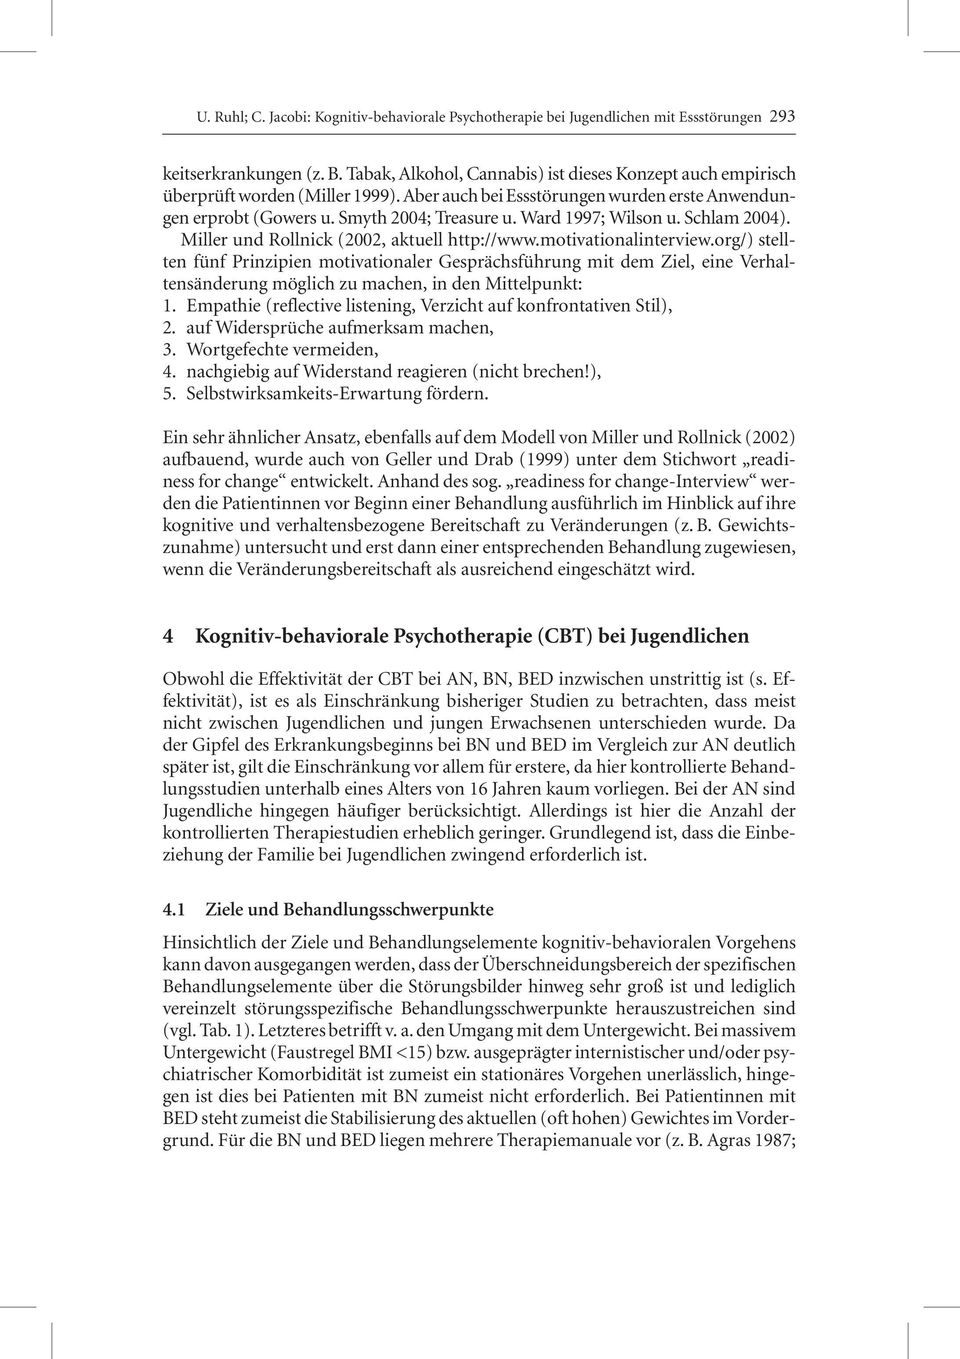 Ward 1997; Wilson u. Schlam 2004). Miller und Rollnick (2002, aktuell http://www.motivationalinterview.